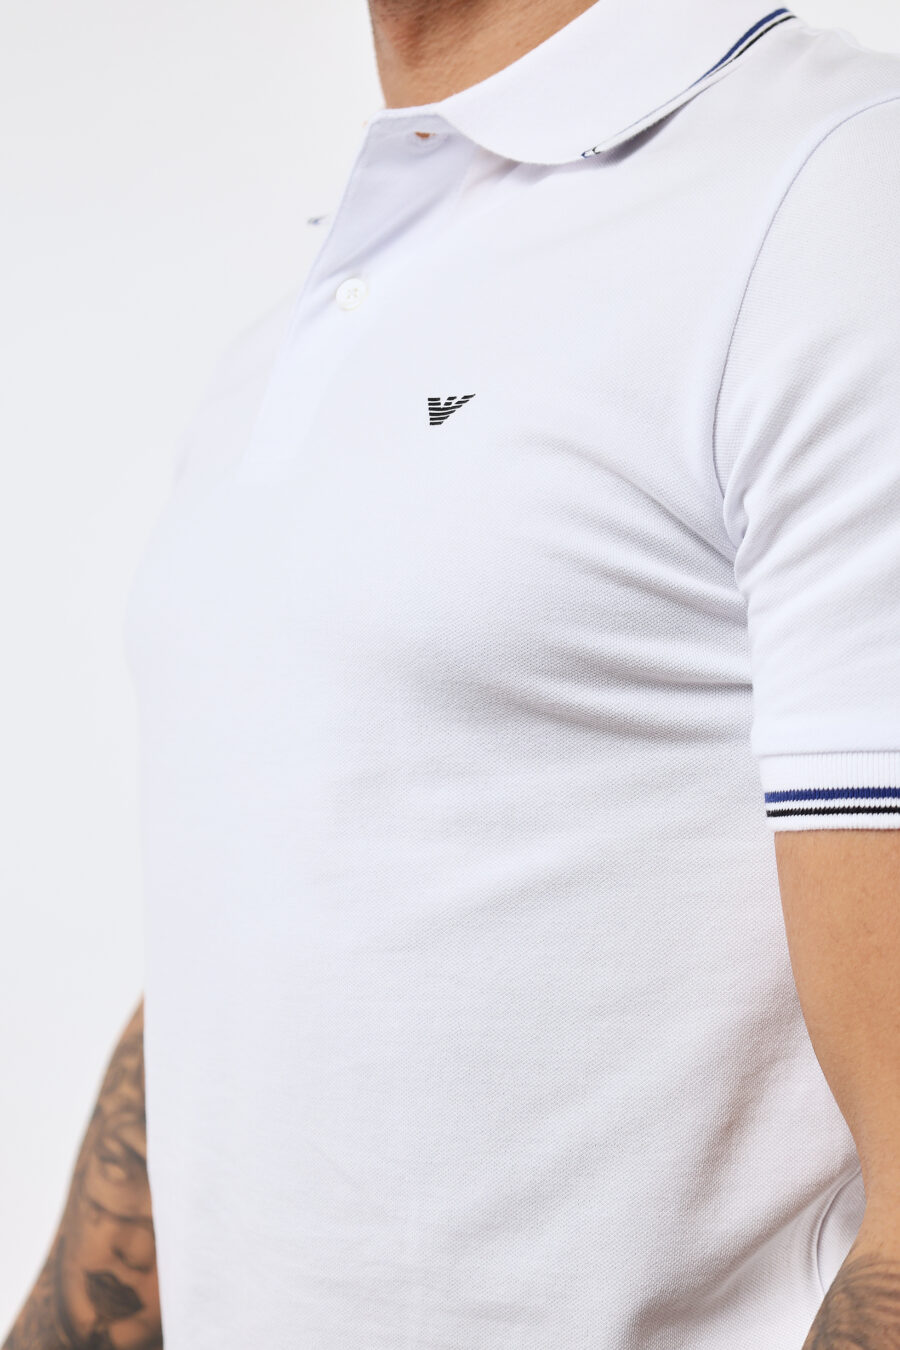 Weißes gestricktes Poloshirt mit gestreiftem Kragen und Adler-Mini-Logo - BLS Fashion 4